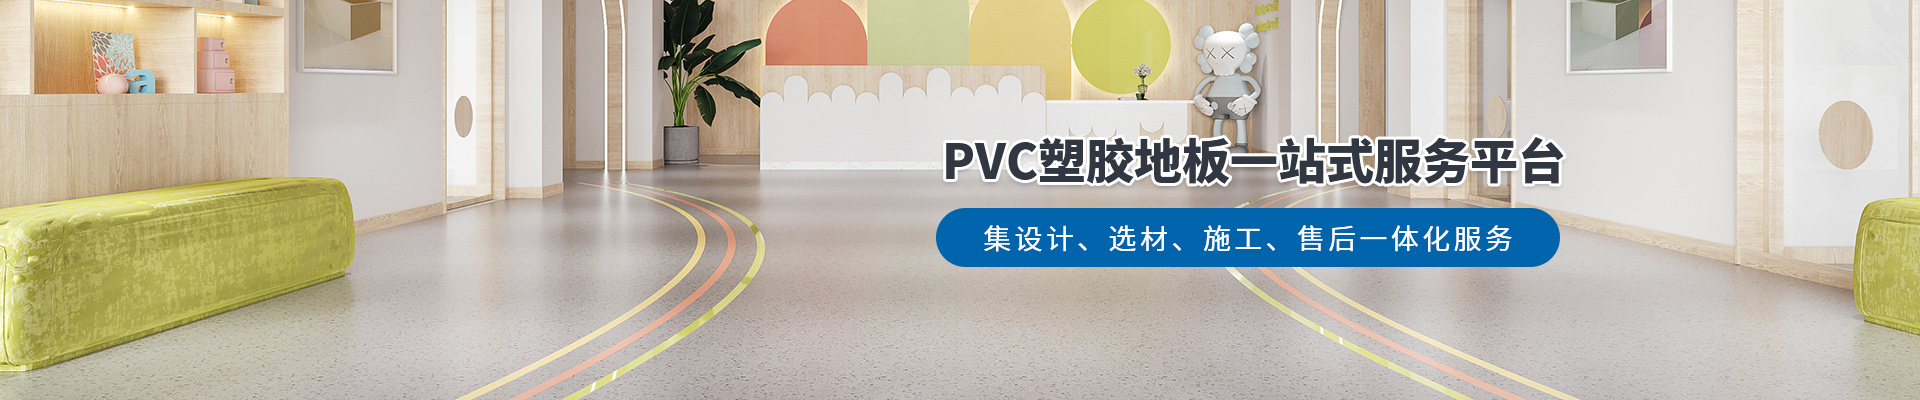 鳳城橡塑，PVC塑膠地板一站式服務平臺